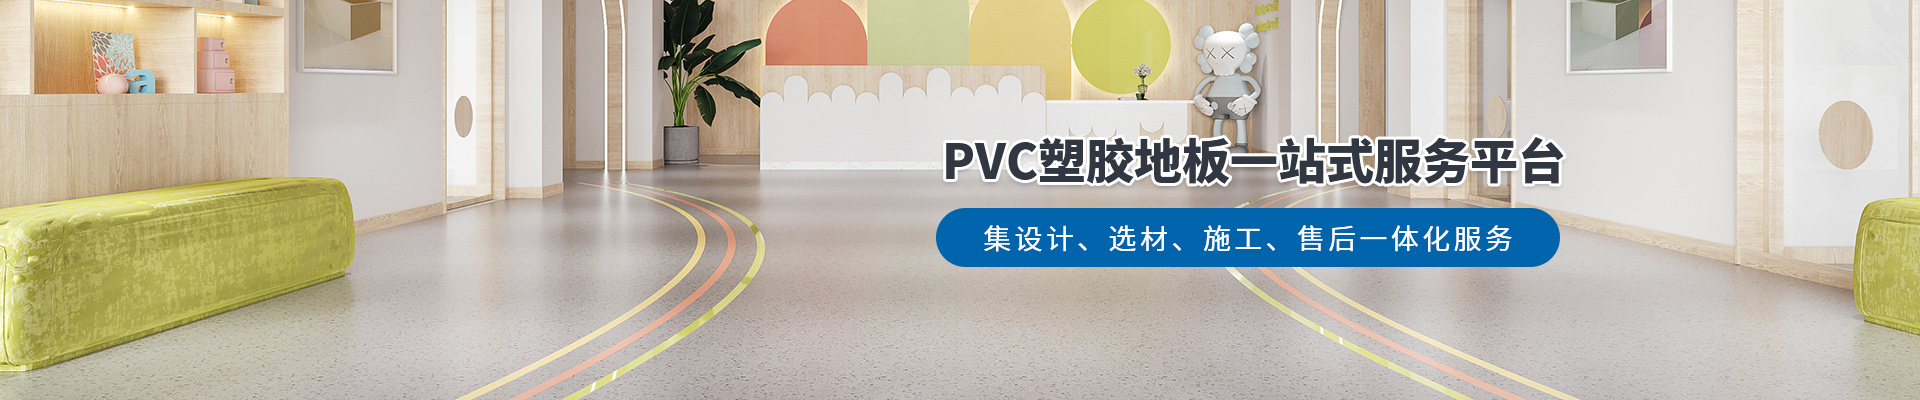 鳳城橡塑，PVC塑膠地板一站式服務平臺